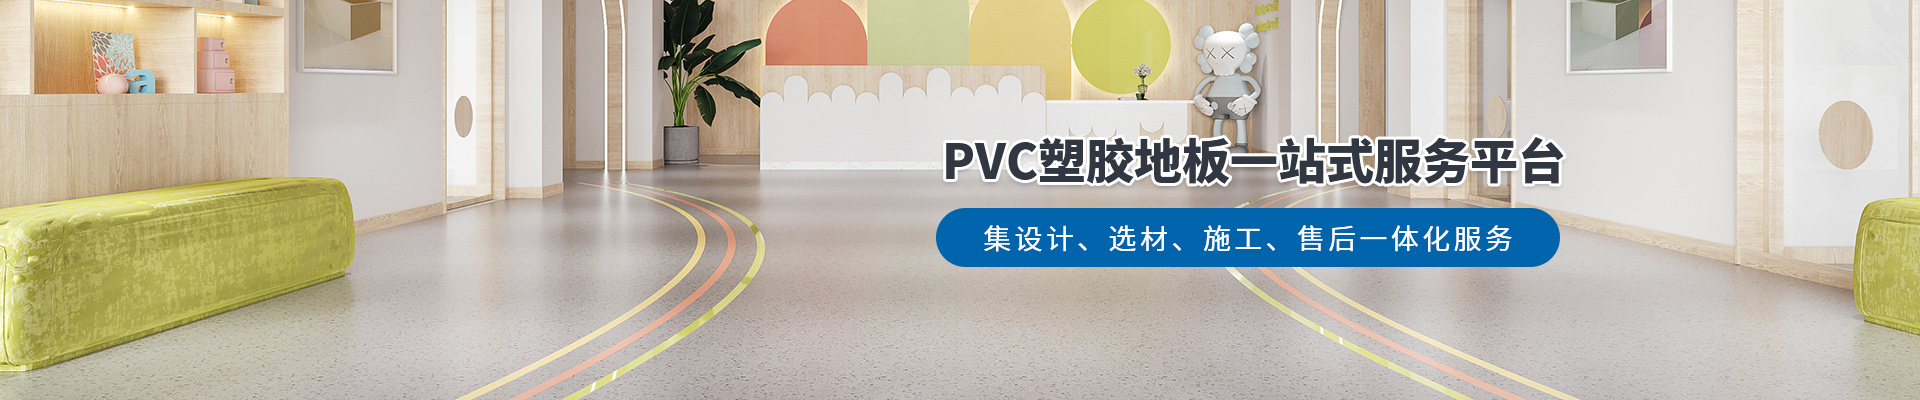 鳳城橡塑，PVC塑膠地板一站式服務平臺